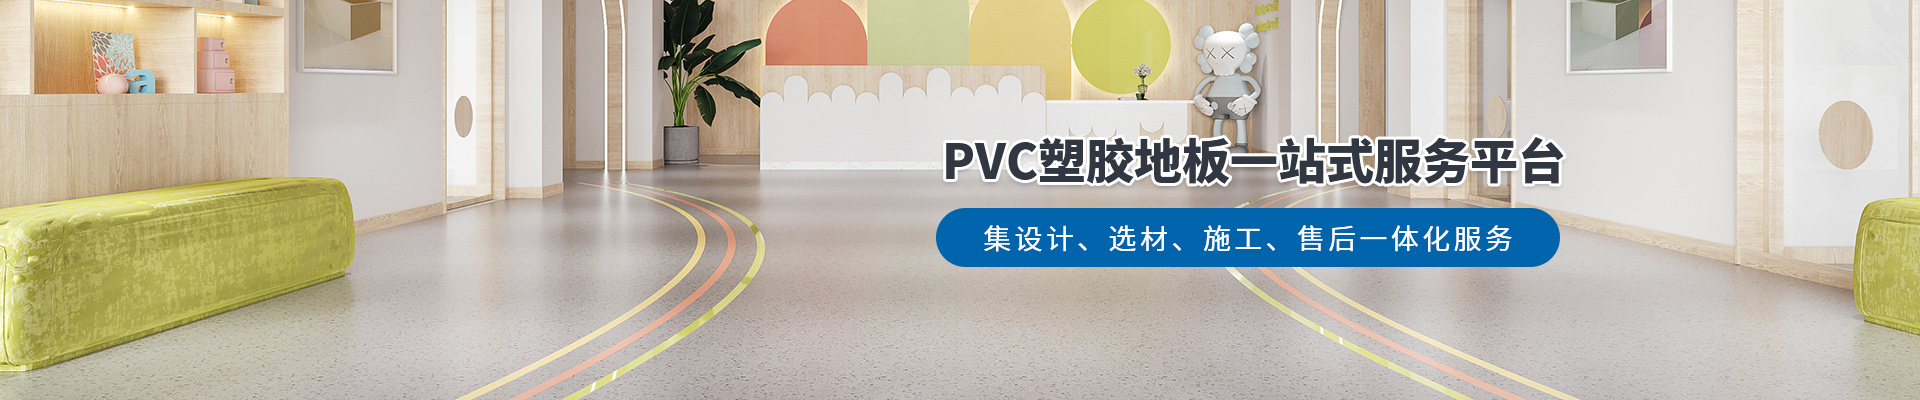 鳳城橡塑，PVC塑膠地板一站式服務平臺